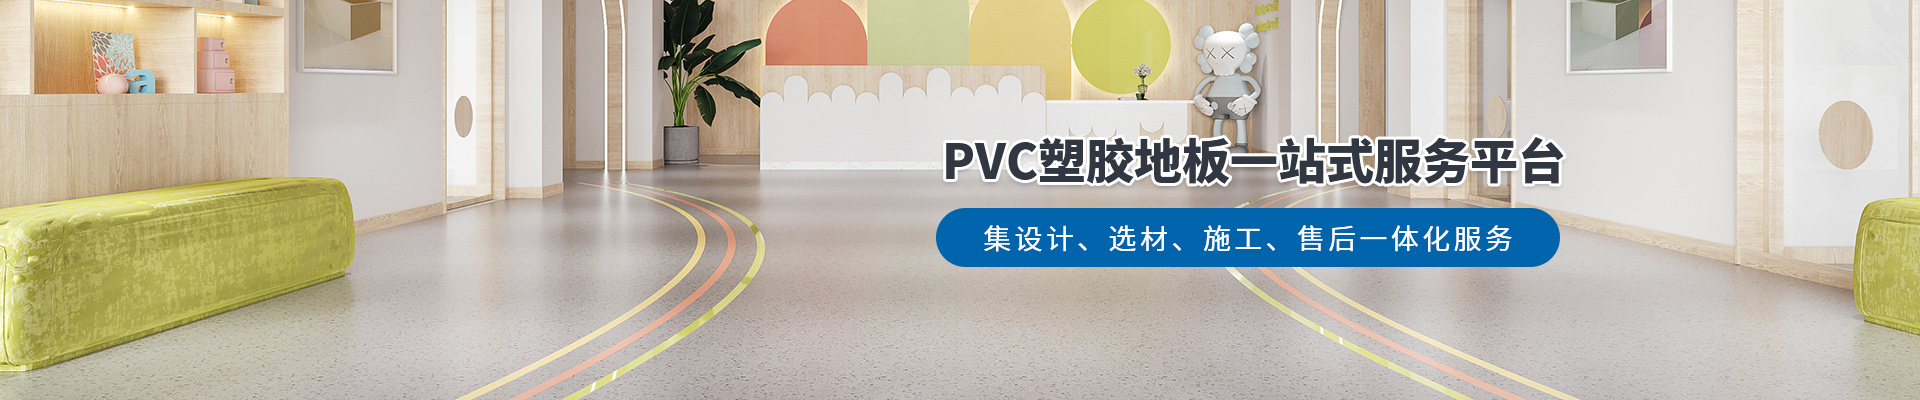 鳳城橡塑，PVC塑膠地板一站式服務平臺